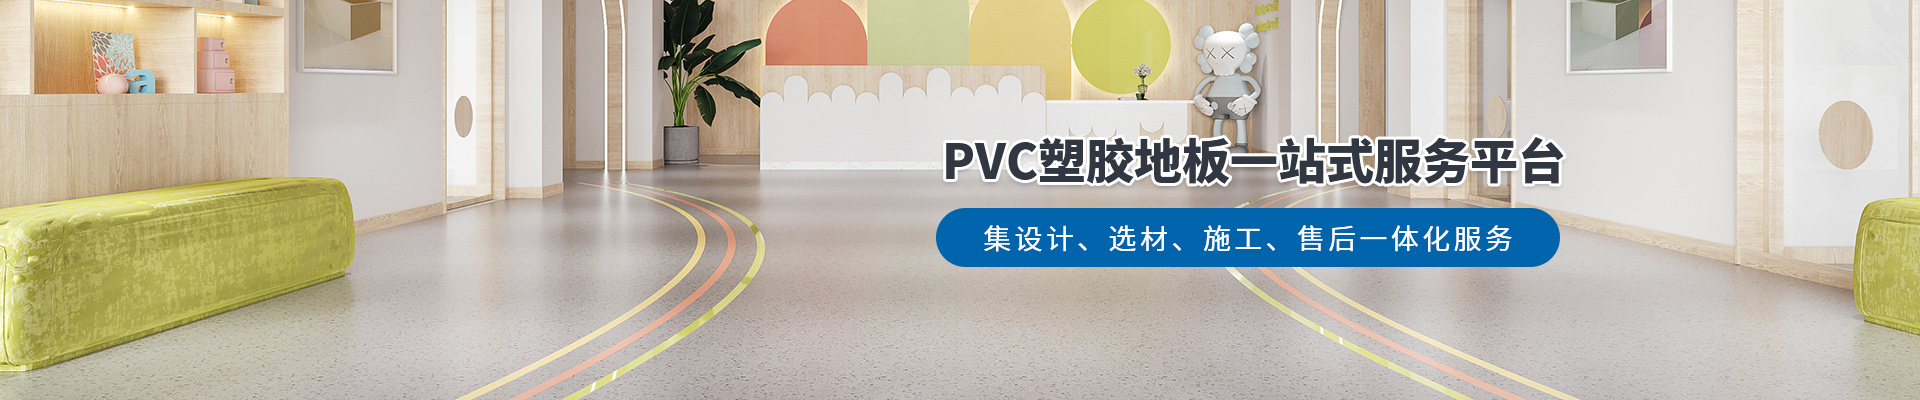 鳳城橡塑，PVC塑膠地板一站式服務平臺